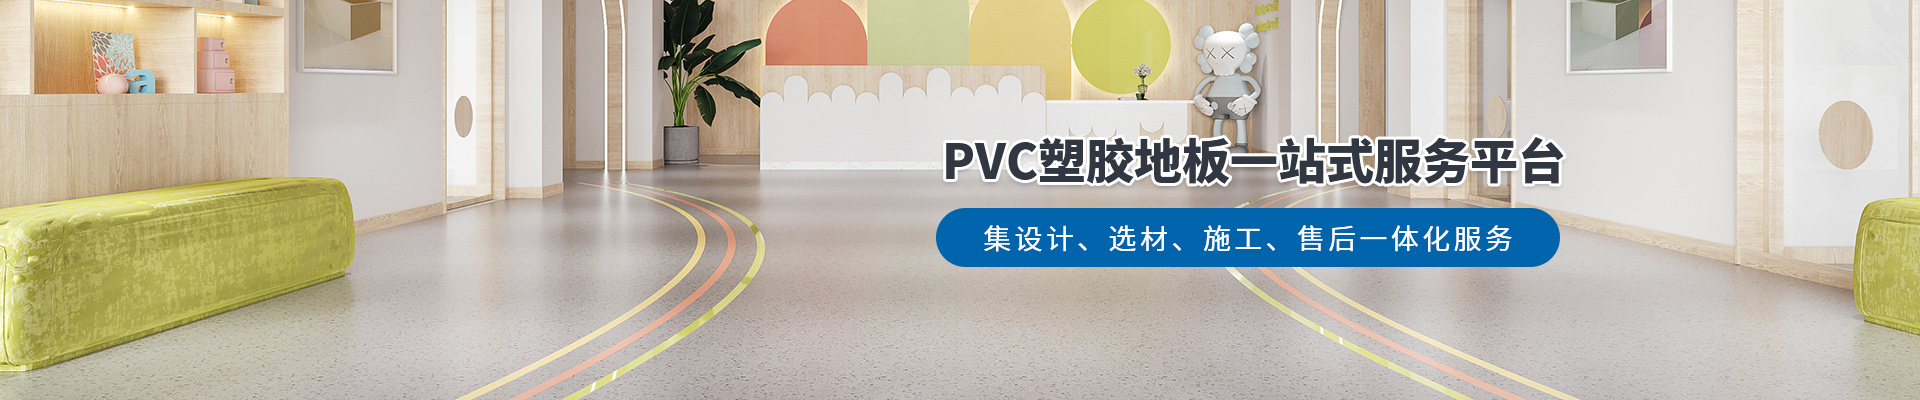 鳳城橡塑，PVC塑膠地板一站式服務平臺